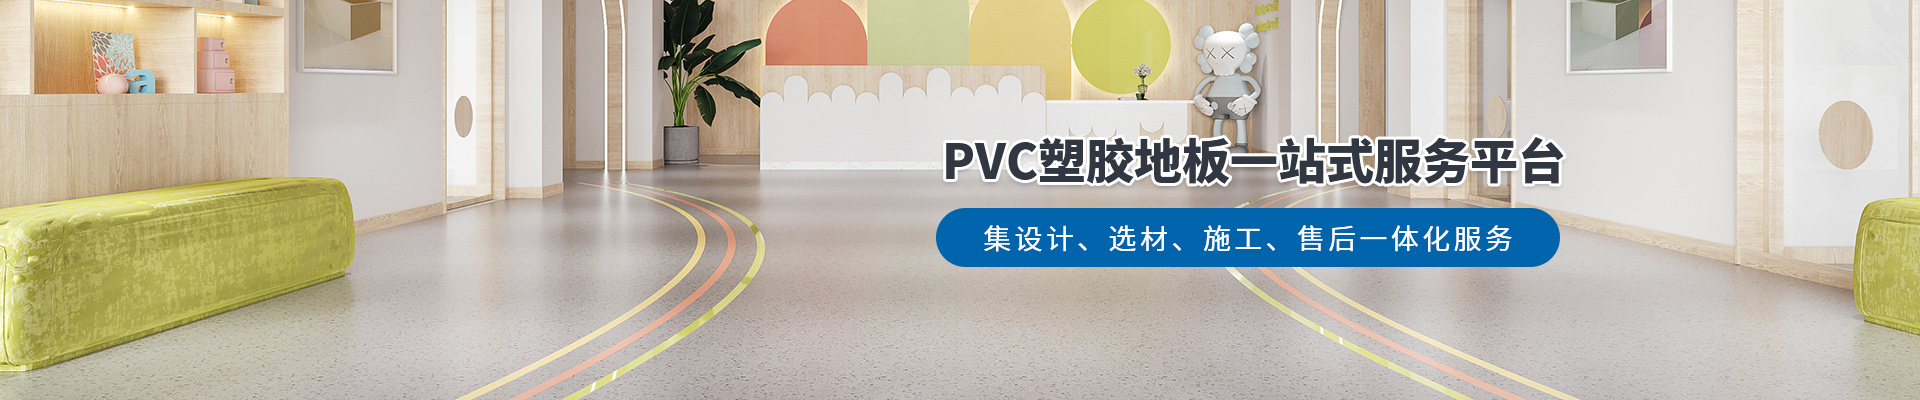 鳳城橡塑，PVC塑膠地板一站式服務平臺